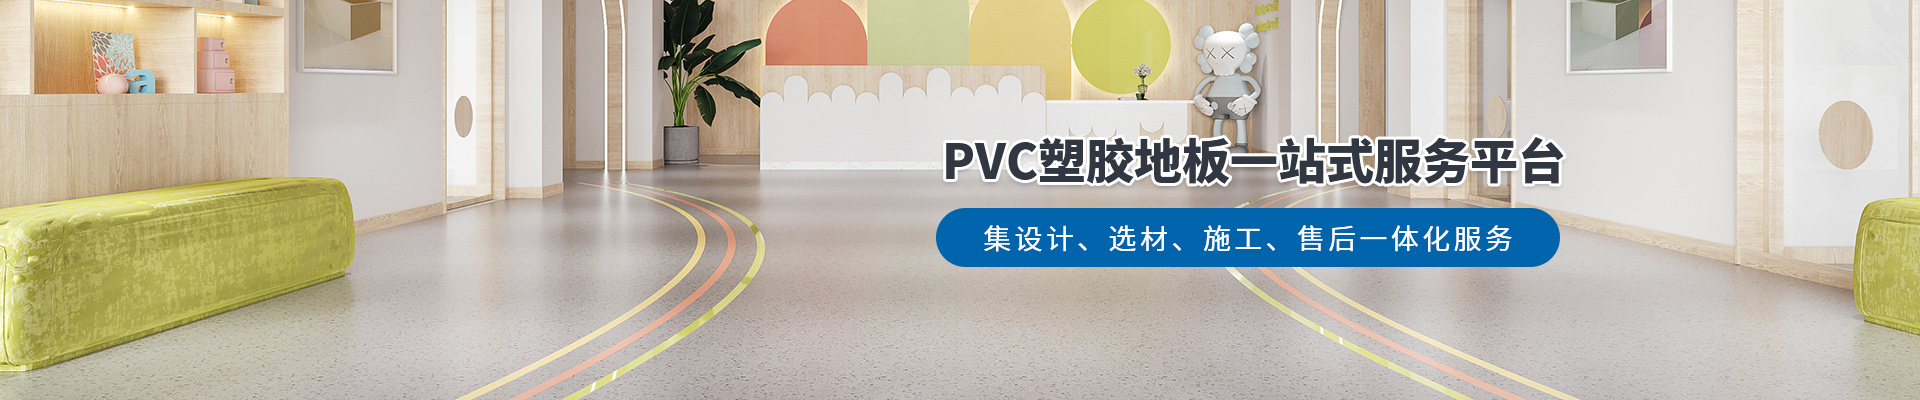 鳳城橡塑，PVC塑膠地板一站式服務平臺